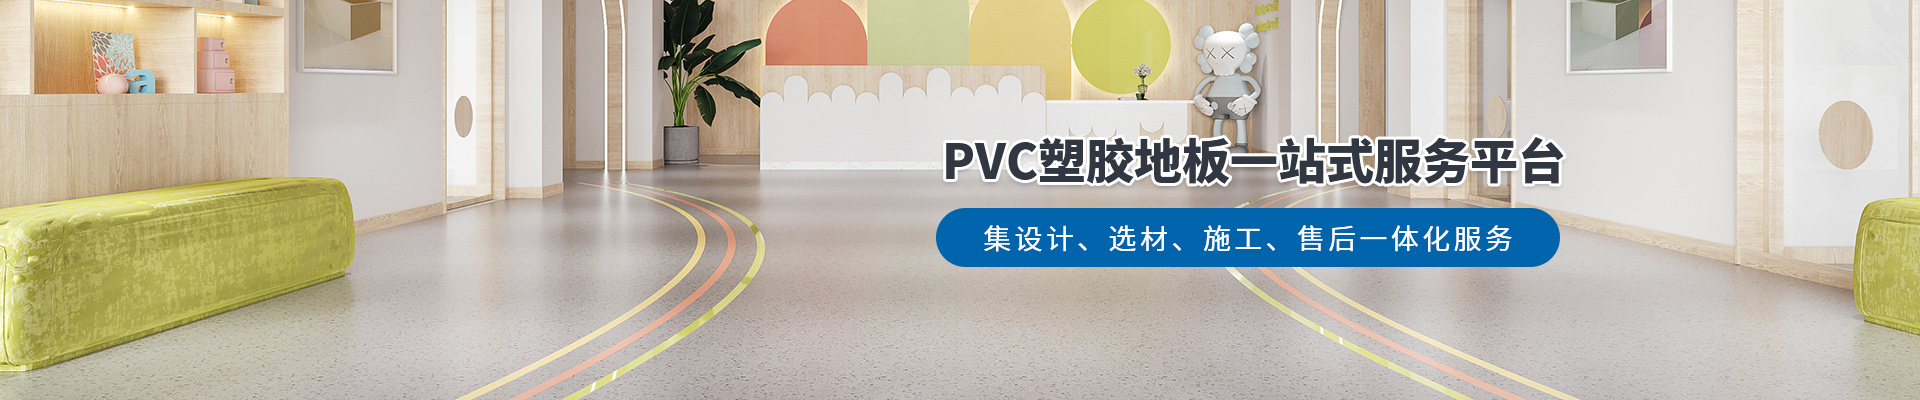 鳳城橡塑，PVC塑膠地板一站式服務平臺